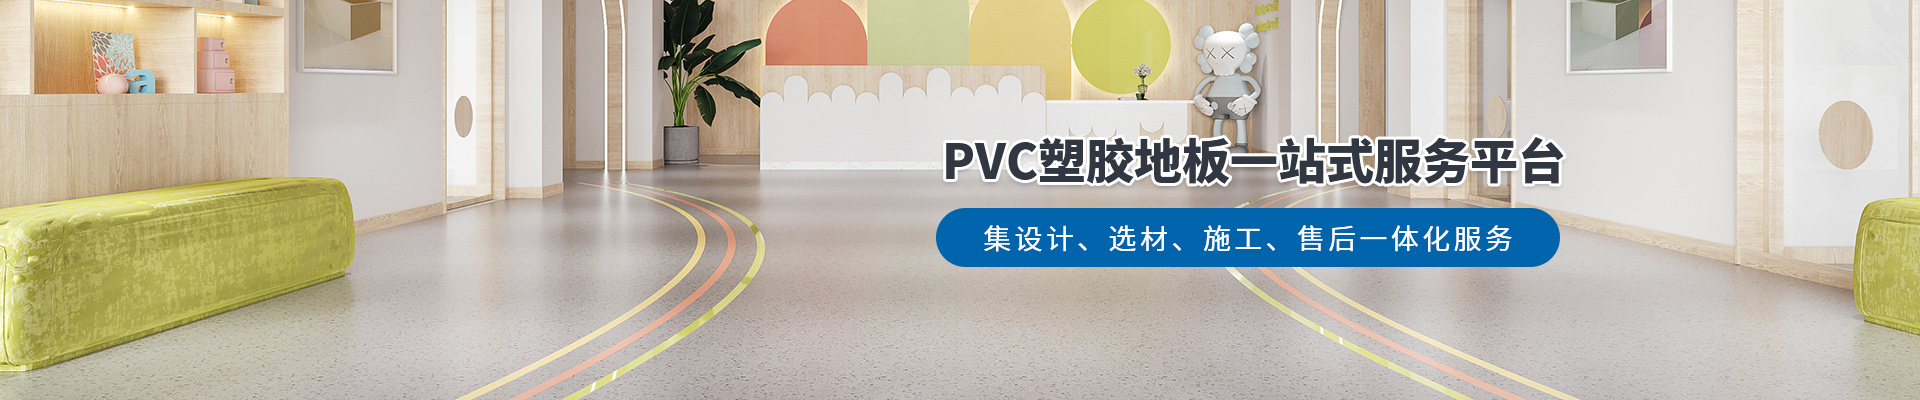 鳳城橡塑，PVC塑膠地板一站式服務平臺